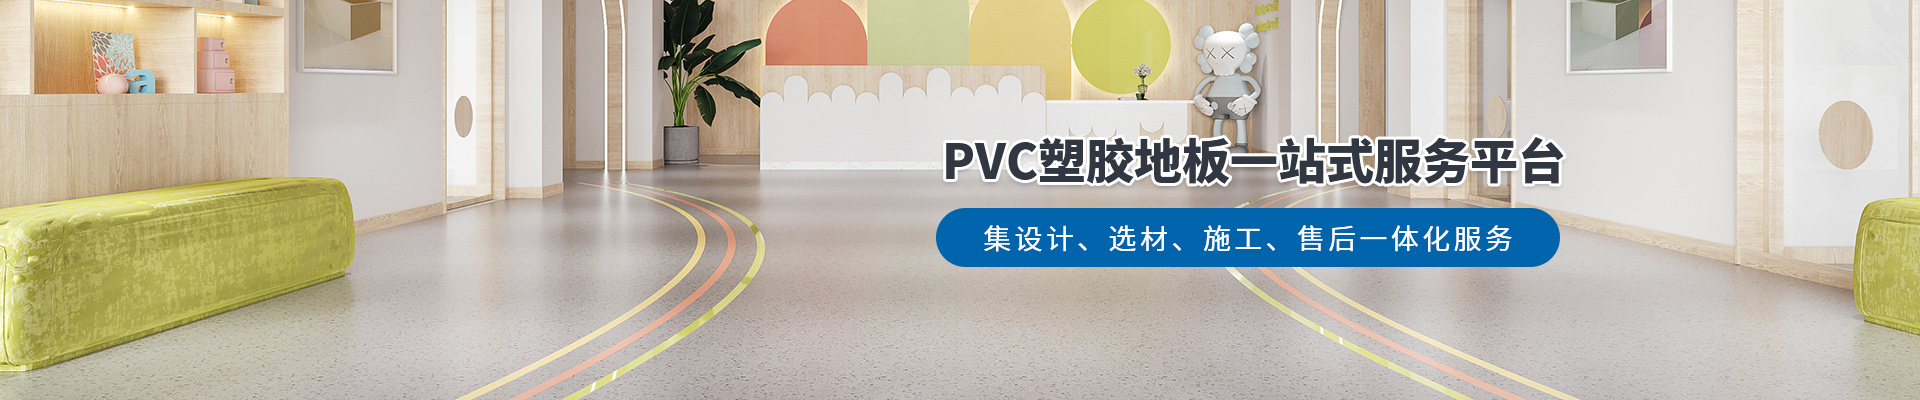 鳳城橡塑，PVC塑膠地板一站式服務平臺